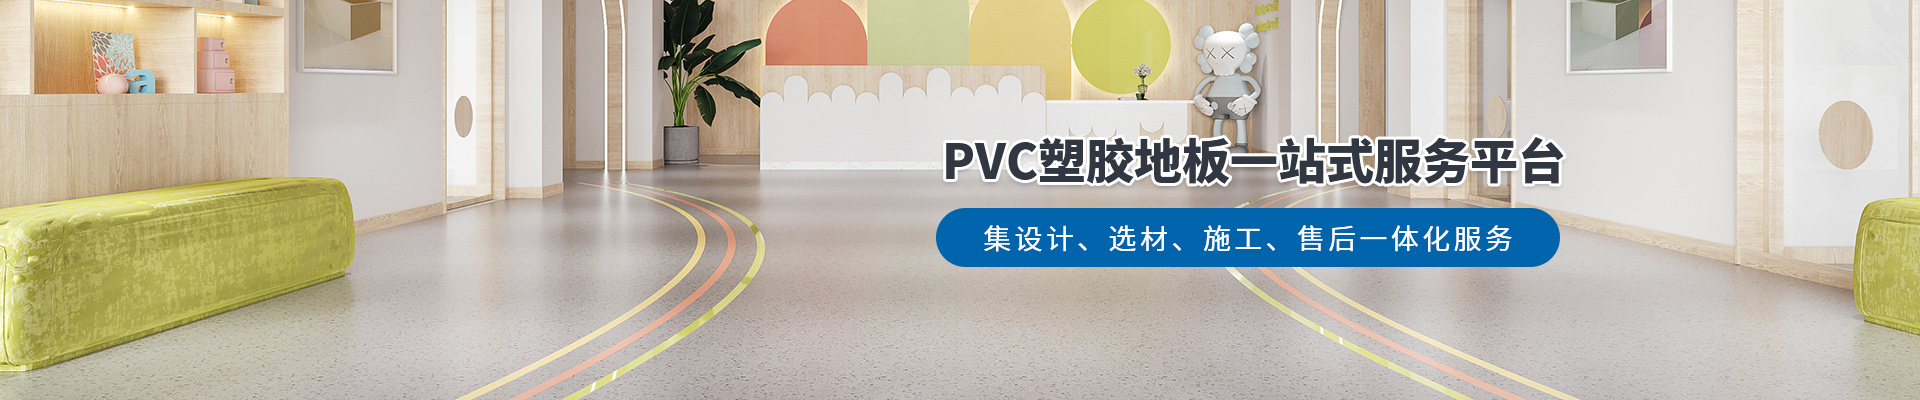 鳳城橡塑，PVC塑膠地板一站式服務平臺